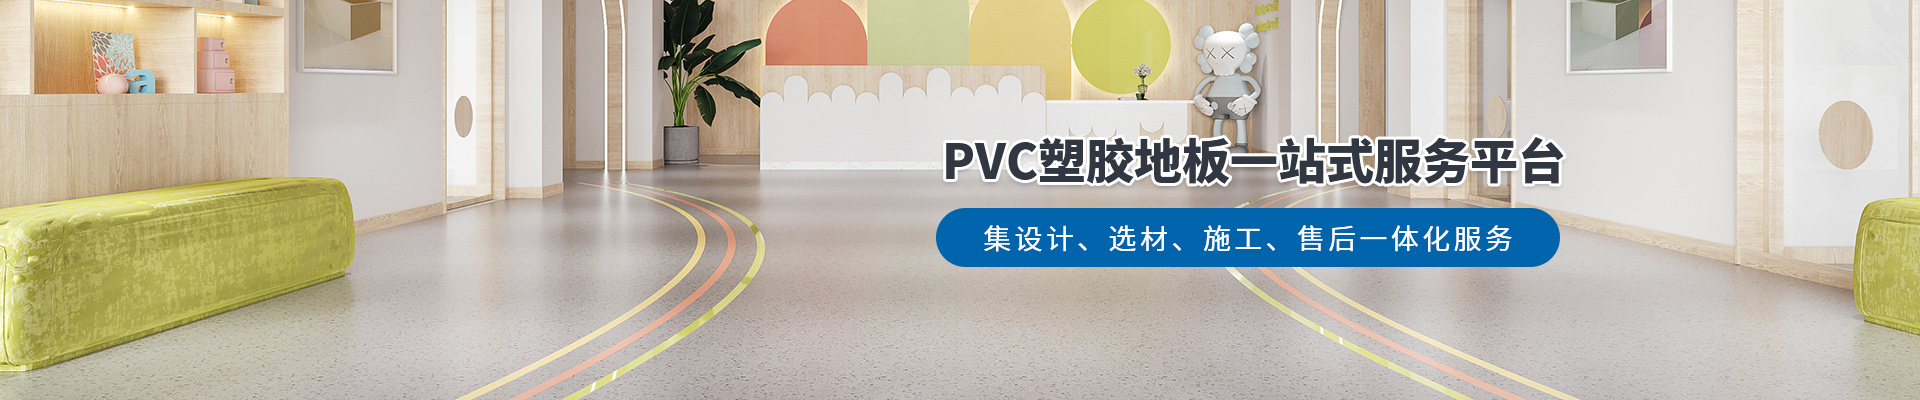 鳳城橡塑，PVC塑膠地板一站式服務平臺